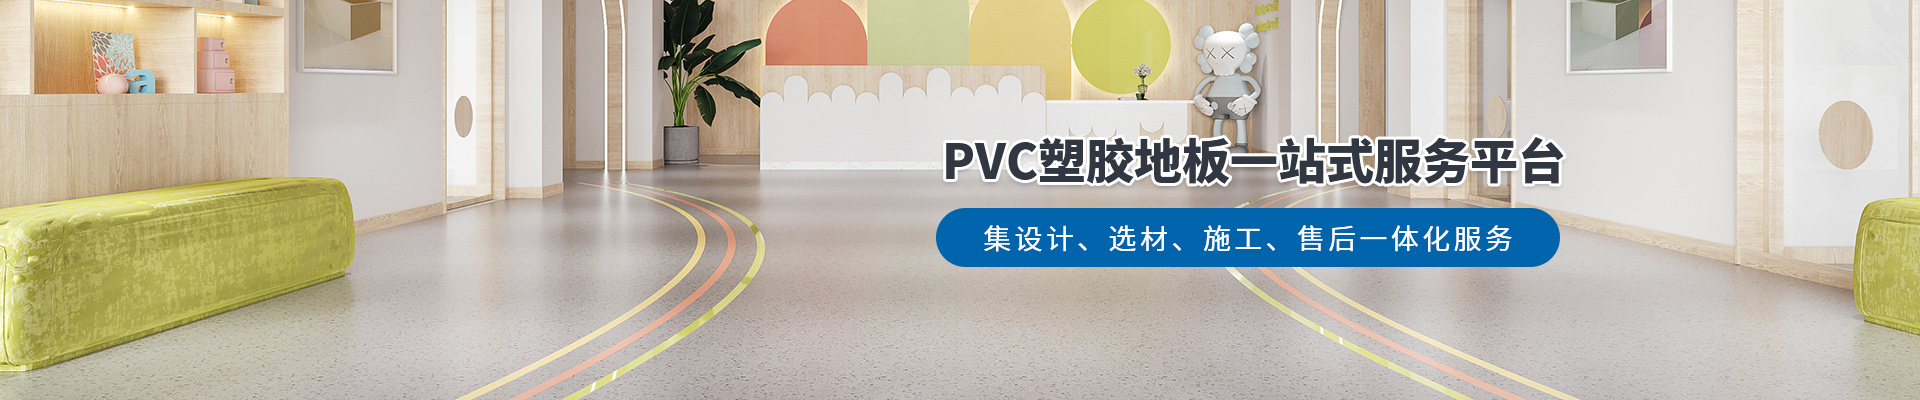 鳳城橡塑，PVC塑膠地板一站式服務平臺